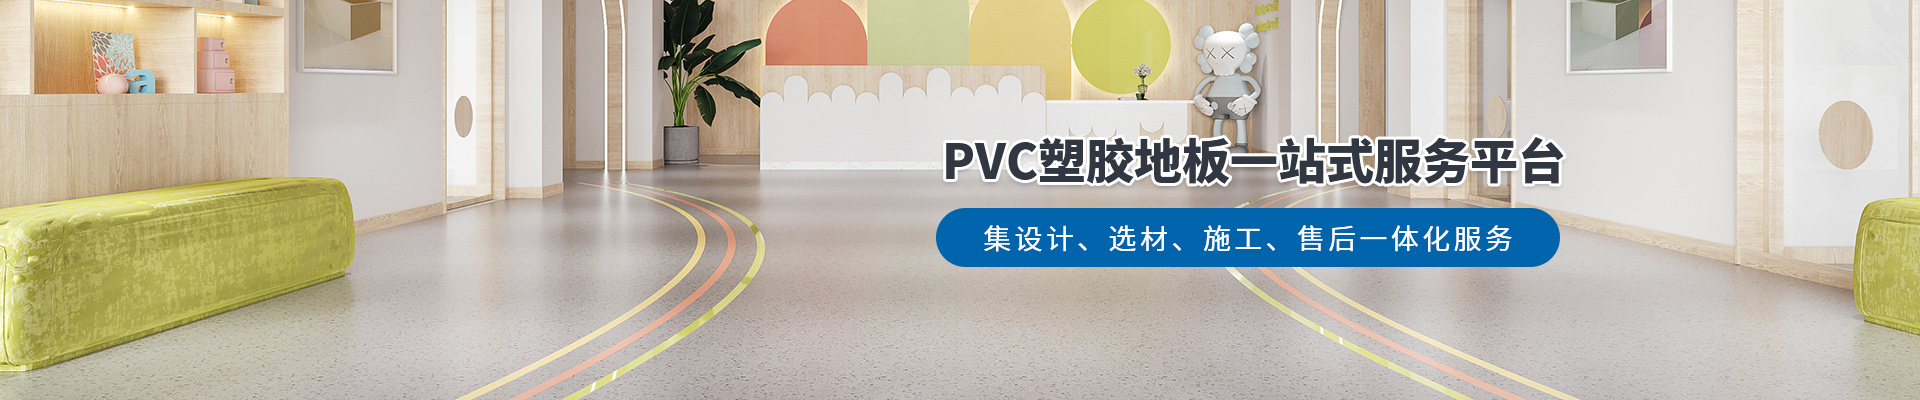 鳳城橡塑，PVC塑膠地板一站式服務平臺